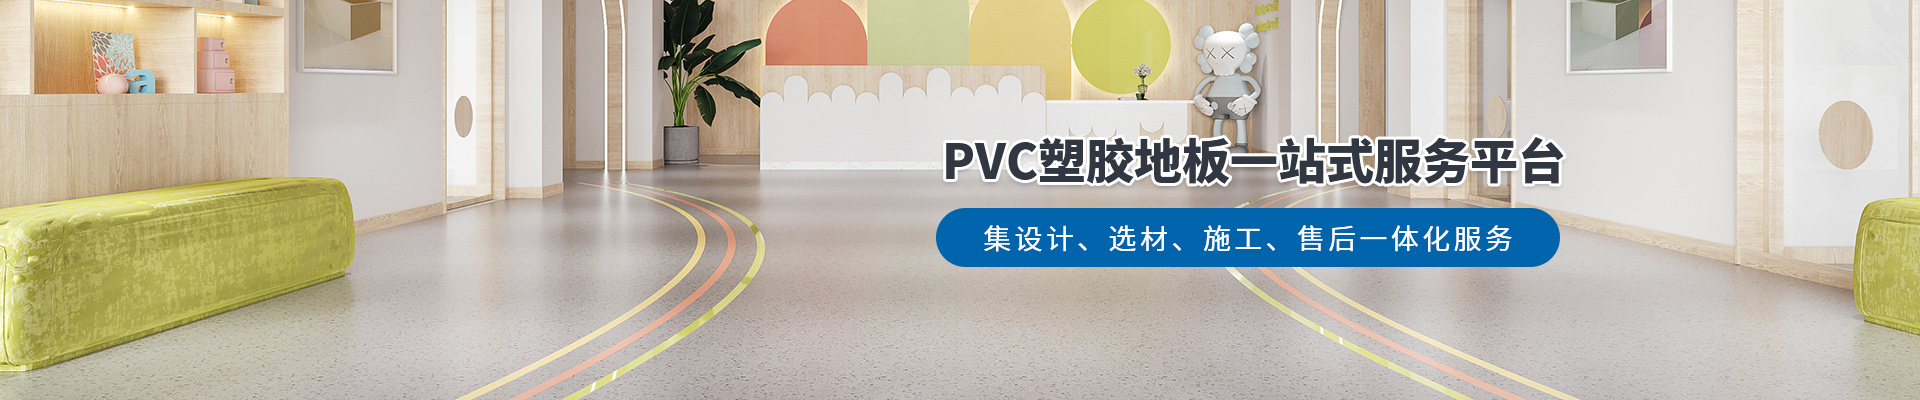 鳳城橡塑，PVC塑膠地板一站式服務平臺